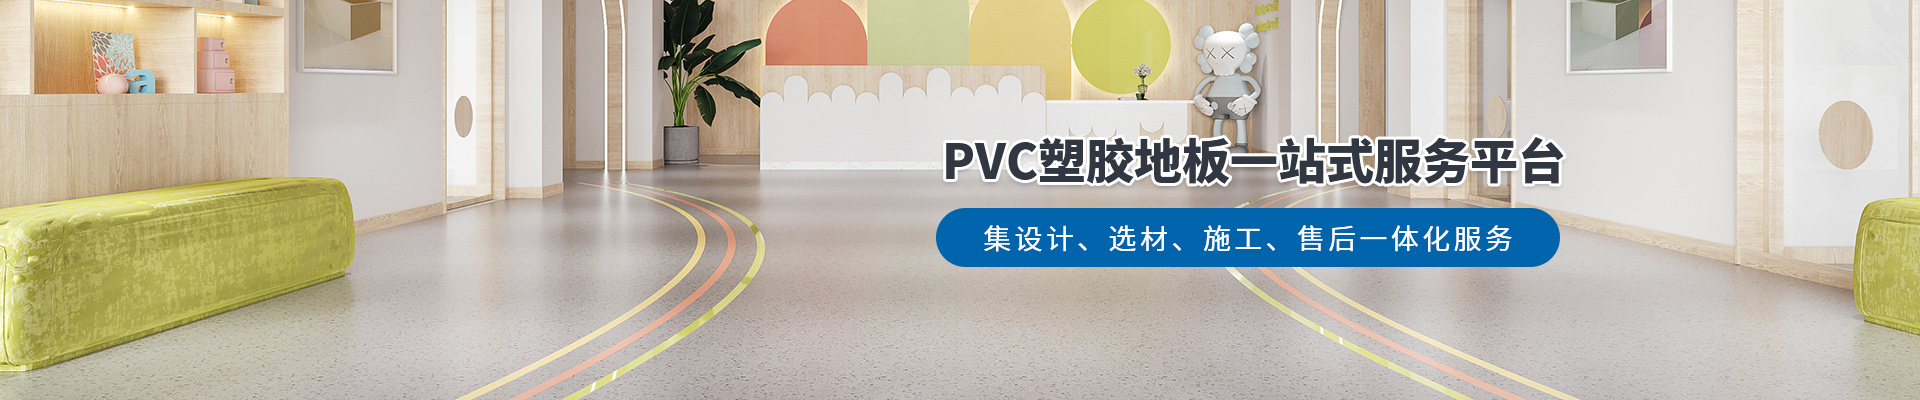 鳳城橡塑，PVC塑膠地板一站式服務平臺